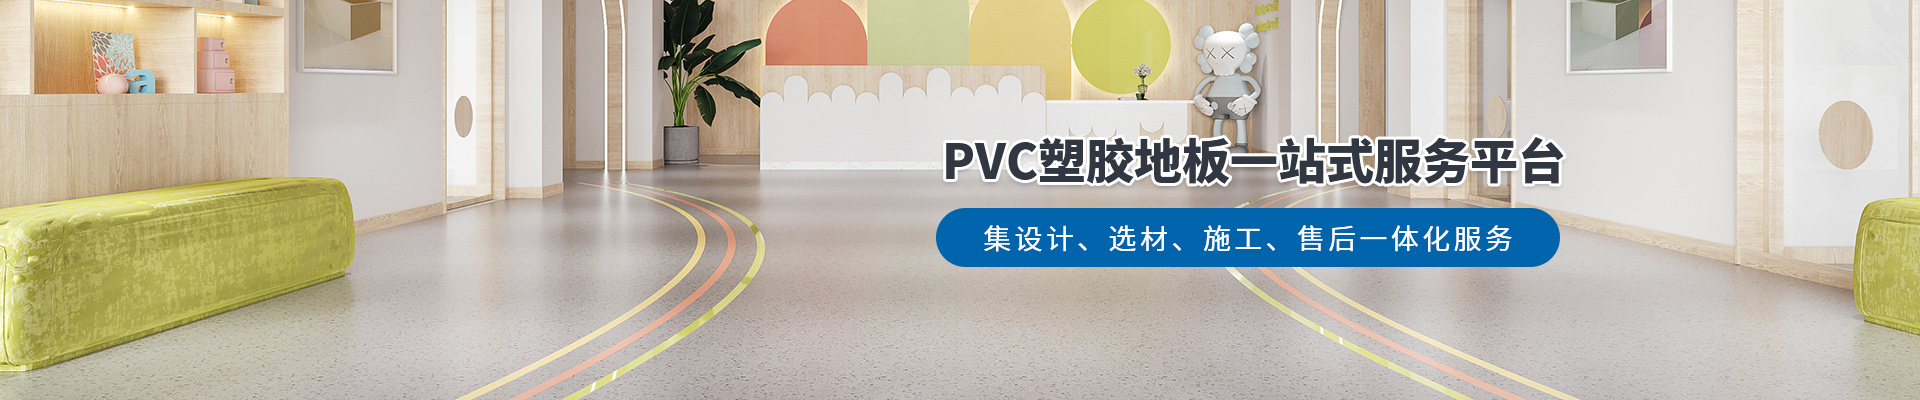 鳳城橡塑，PVC塑膠地板一站式服務平臺